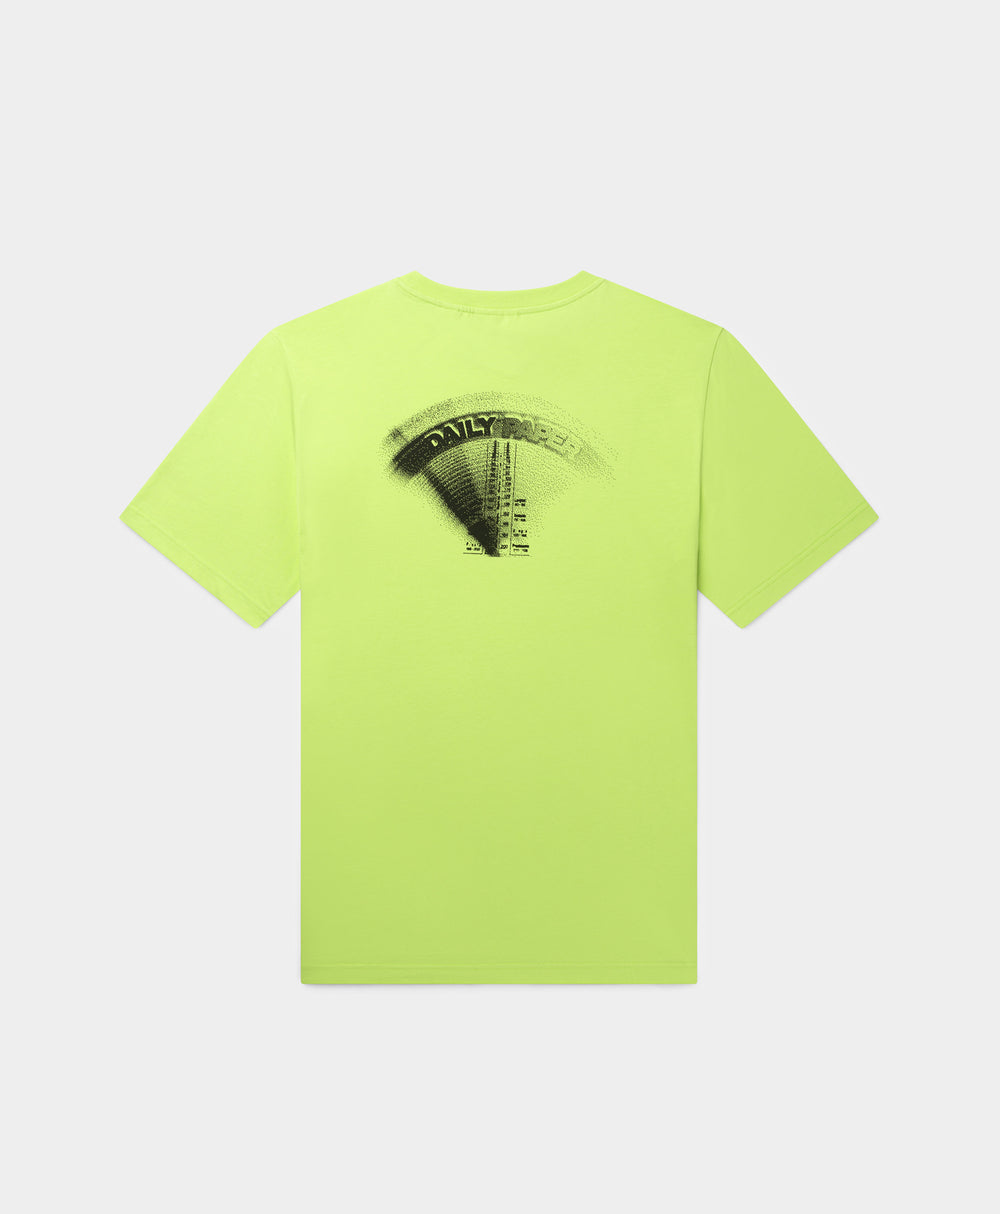 DP - Daiquiri Green Metronome T-Shirt - Packshot - Rear